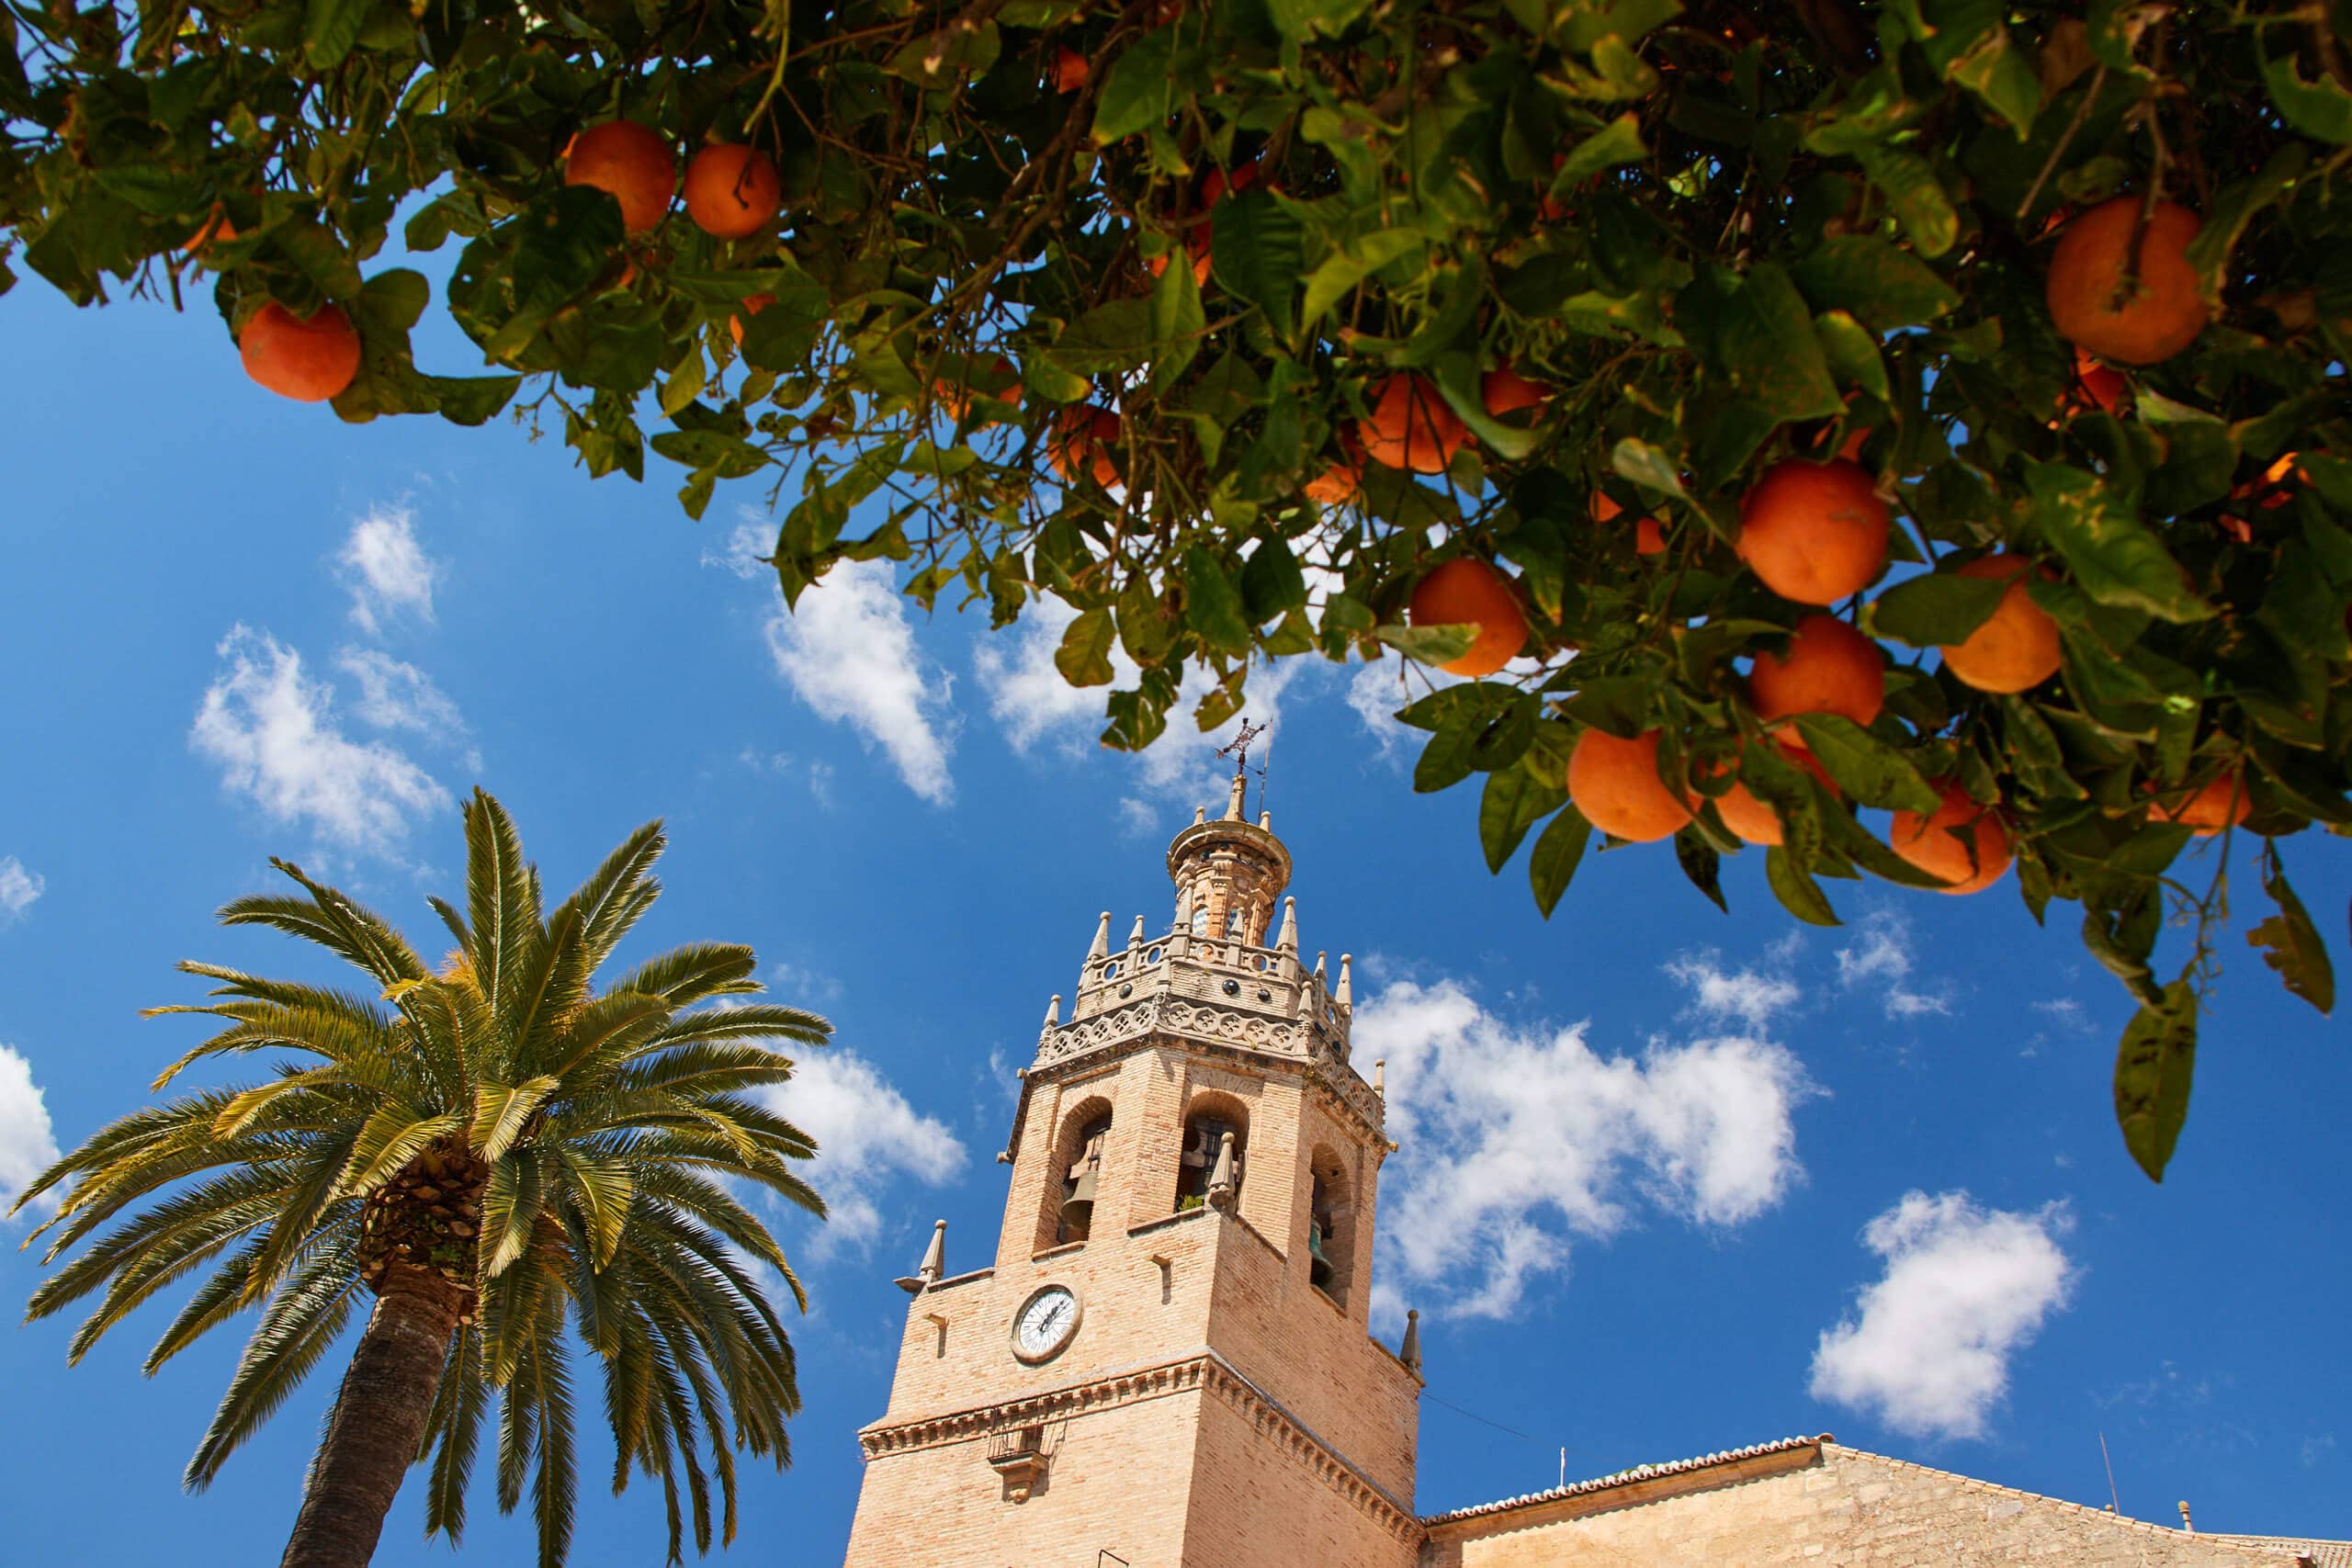 The Iglesia de Santa María la Mayor tower and orange trees